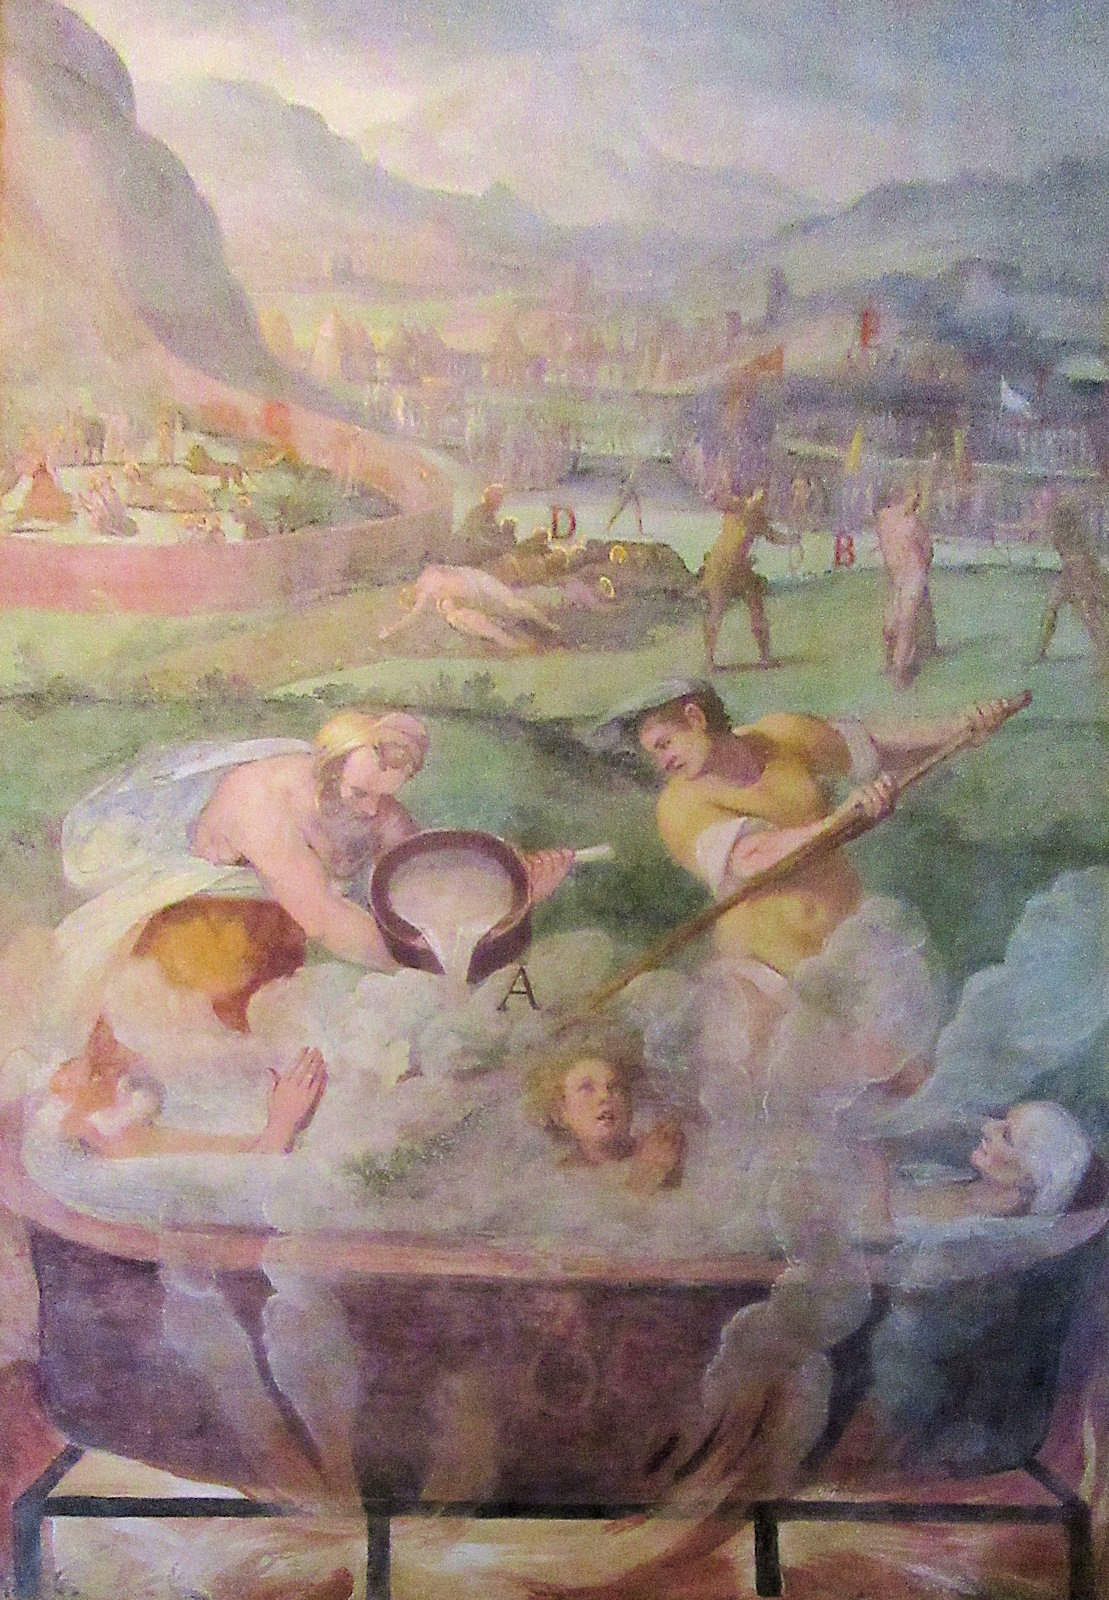 Das Martyrium von Modestus, Veit und Crescentia, Fresko, um 1600, in der Kirche San Stefano Rotondo in Rom